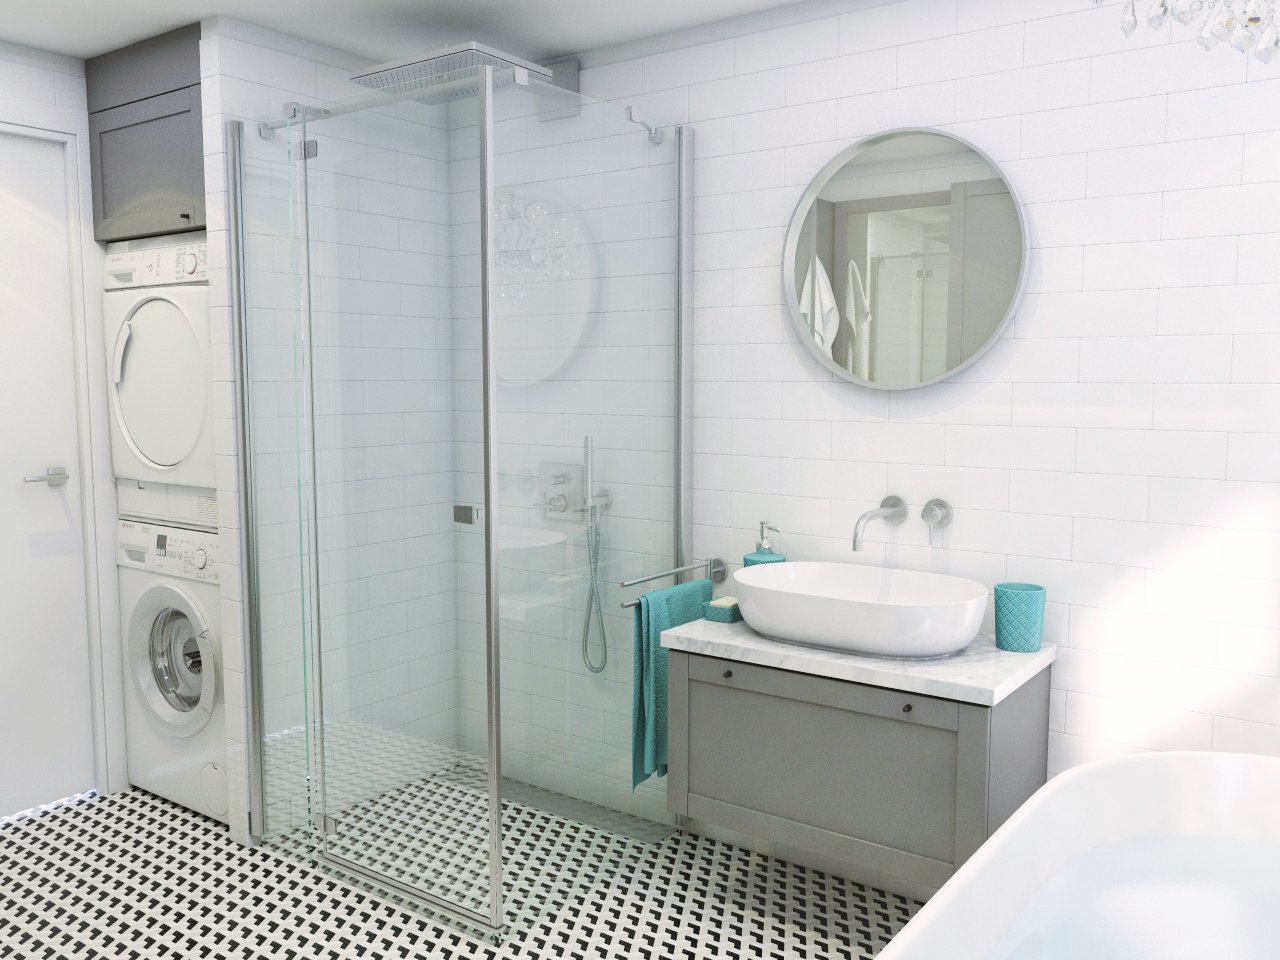 Biela kúpeľňa s nábytkovým umývadlom, sprchovým kútom aj vaňou vybavená práčkou a taktiež sušičkou